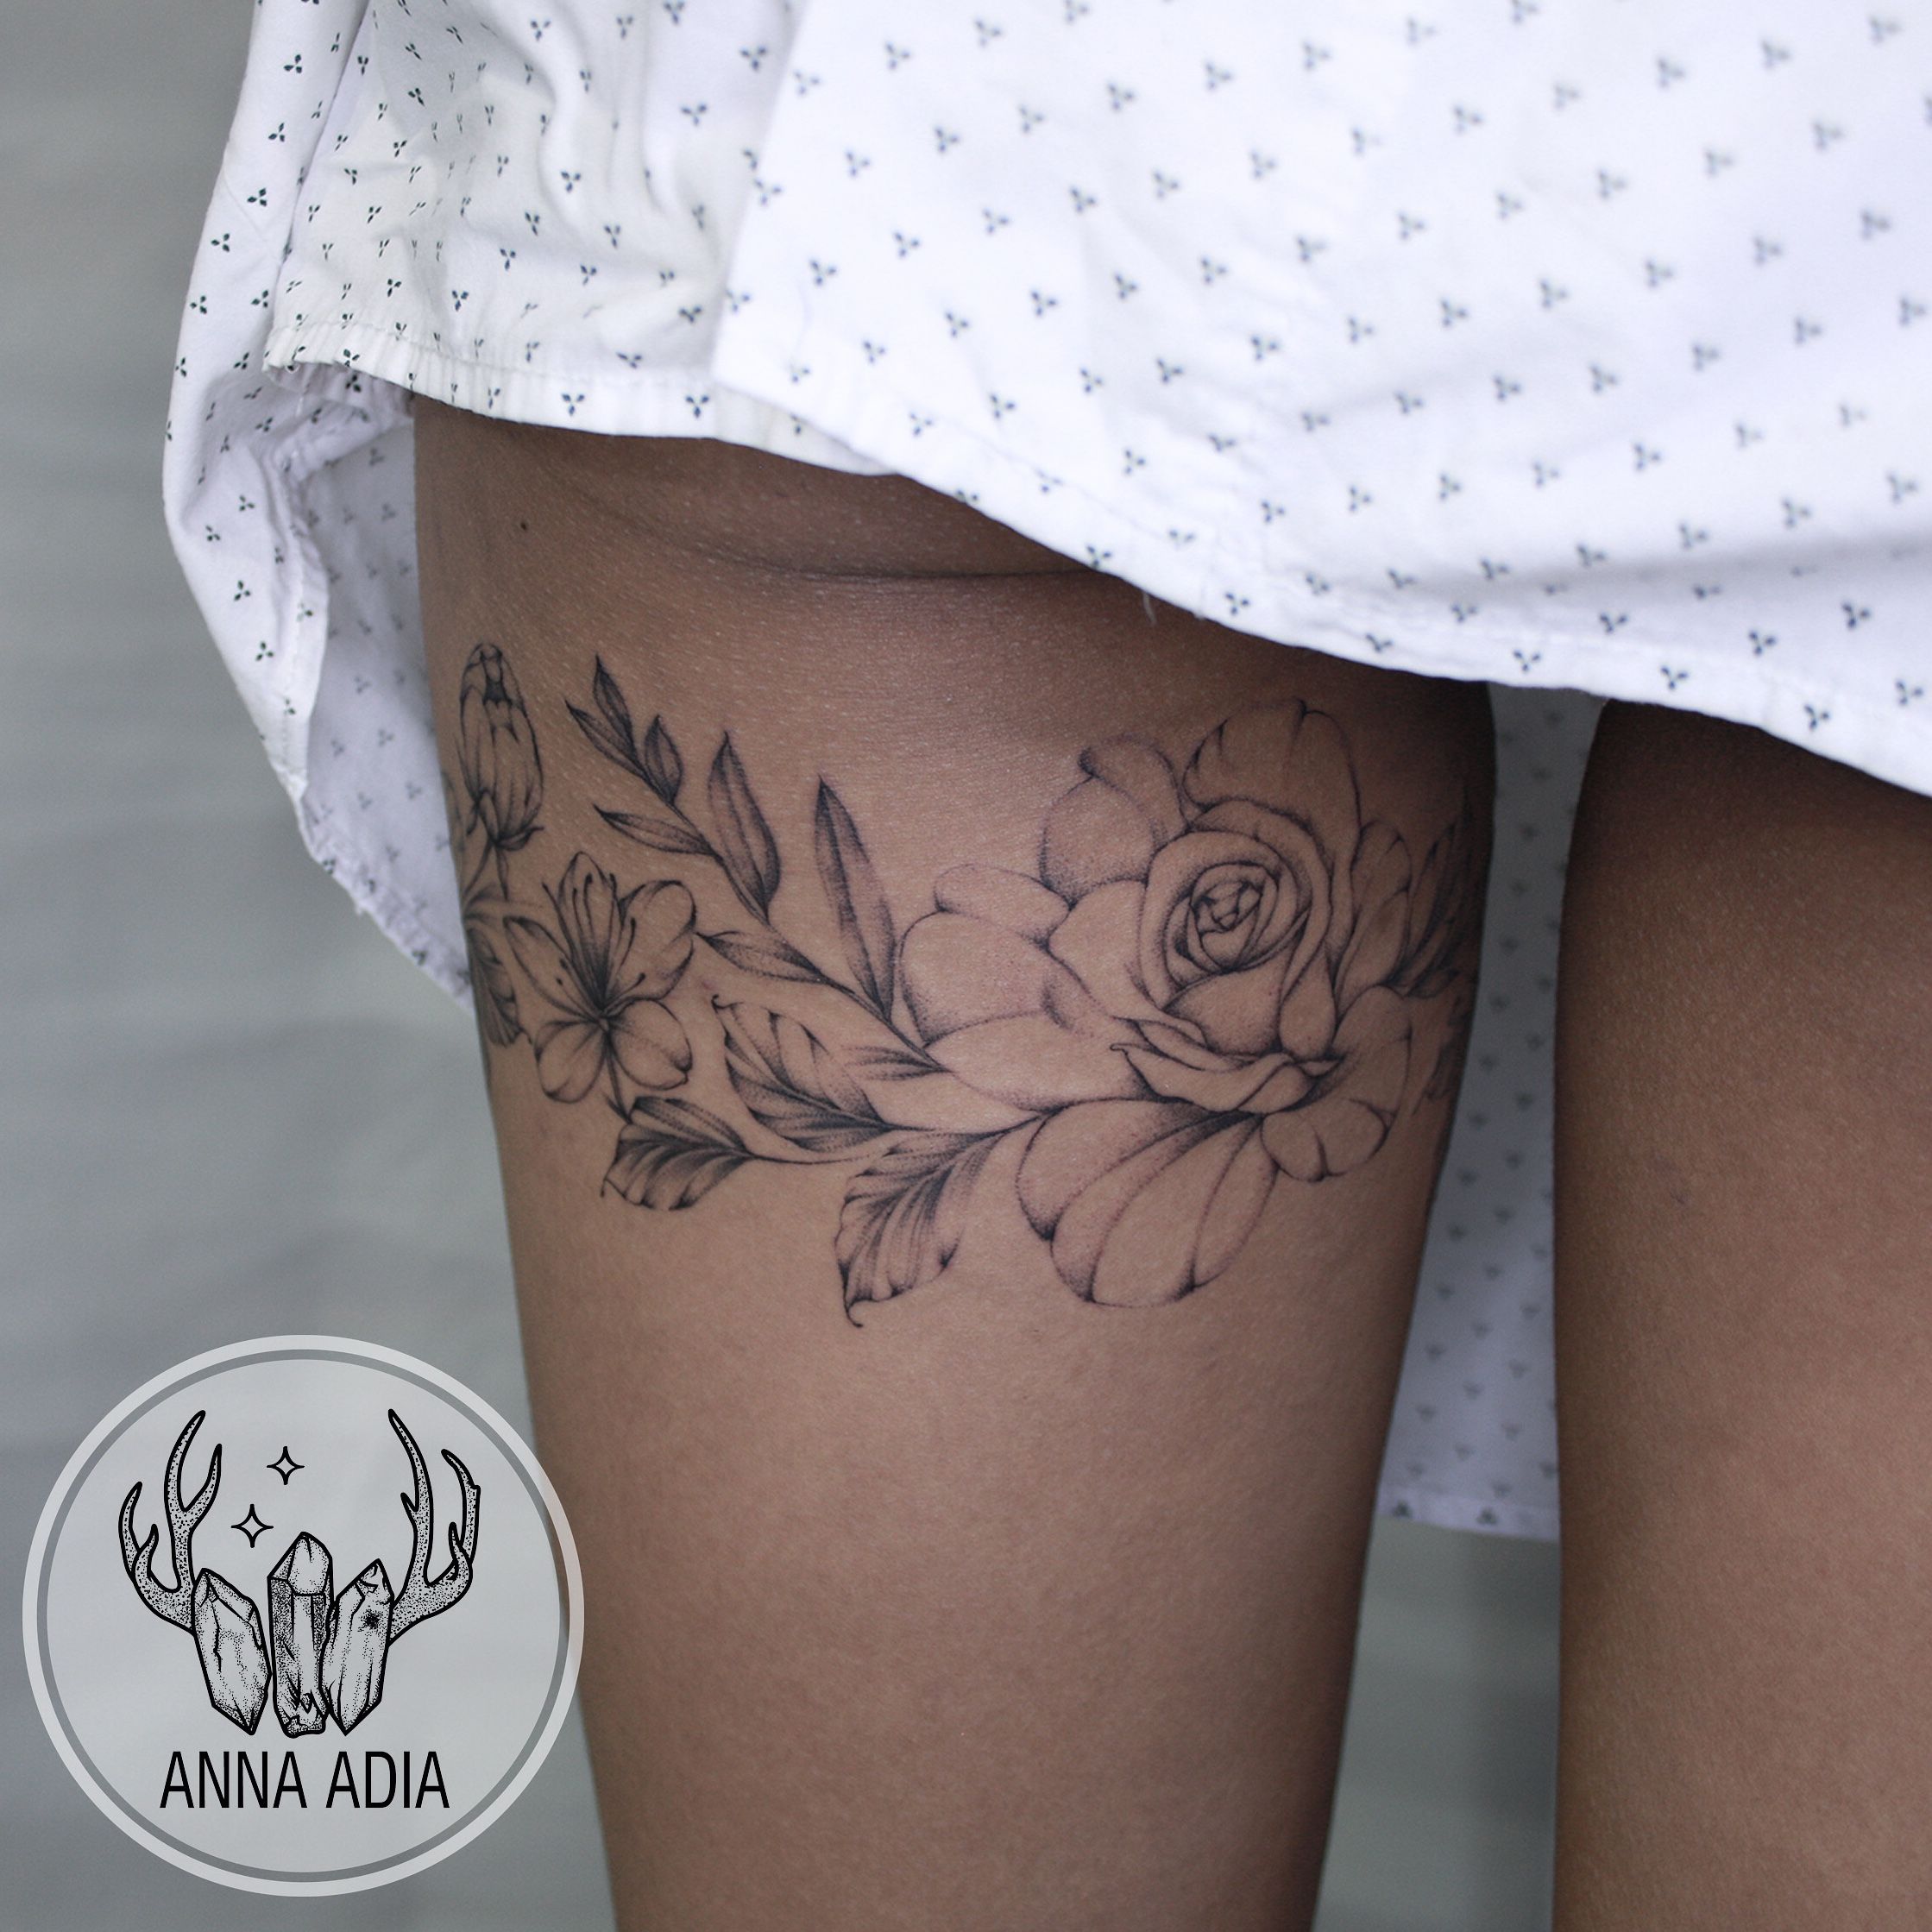 Wrist tattoo black eyed susan flower tattoo wrap around   Wrist  tattoos for guys Flower wrist tattoos Wrap around wrist tattoos